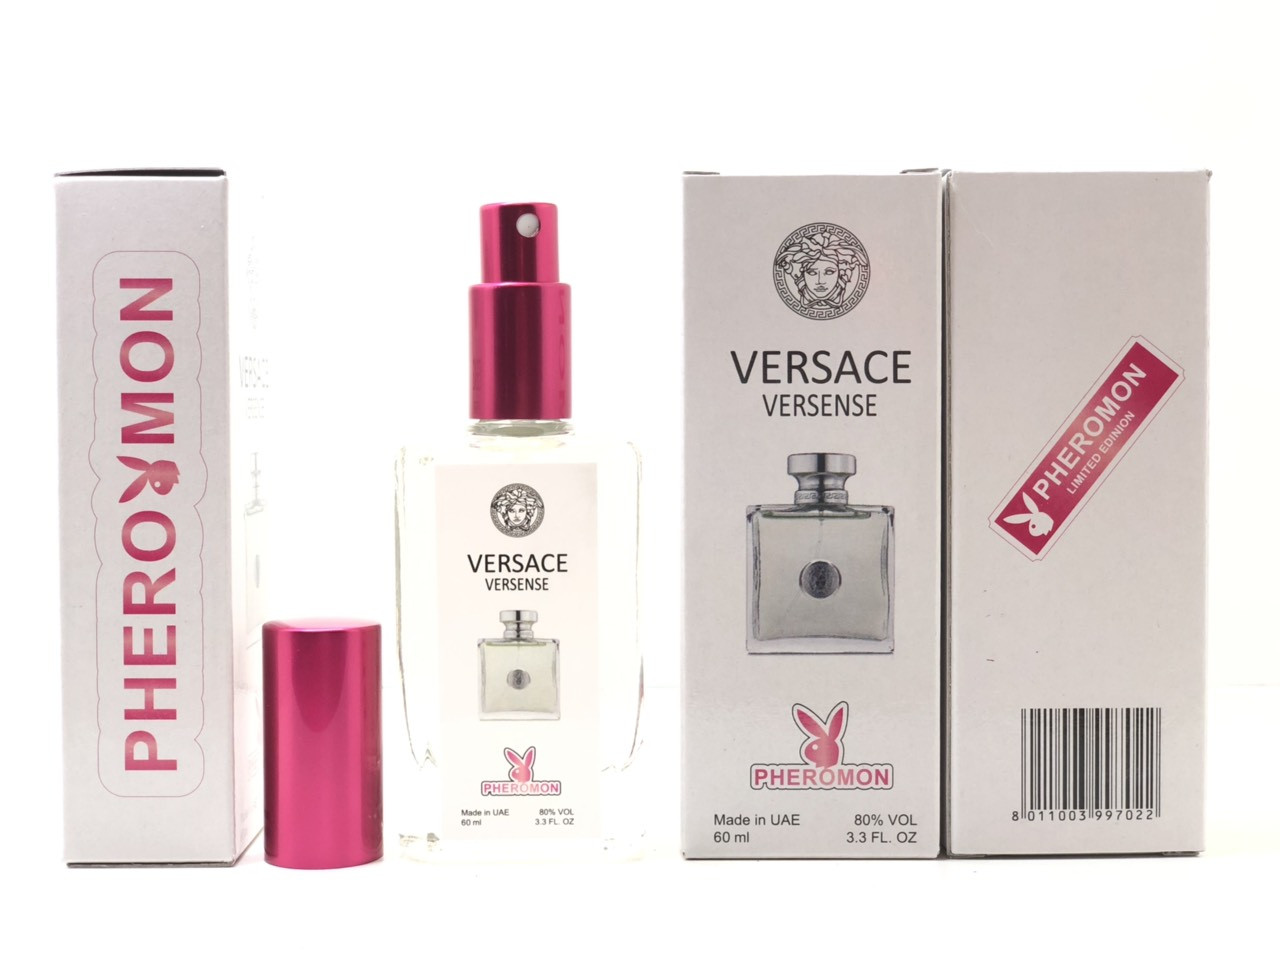 Купить Женский аромат Versace Versense (Версаче Версенс) с феромоном 60 мл  в Харькове от компании 